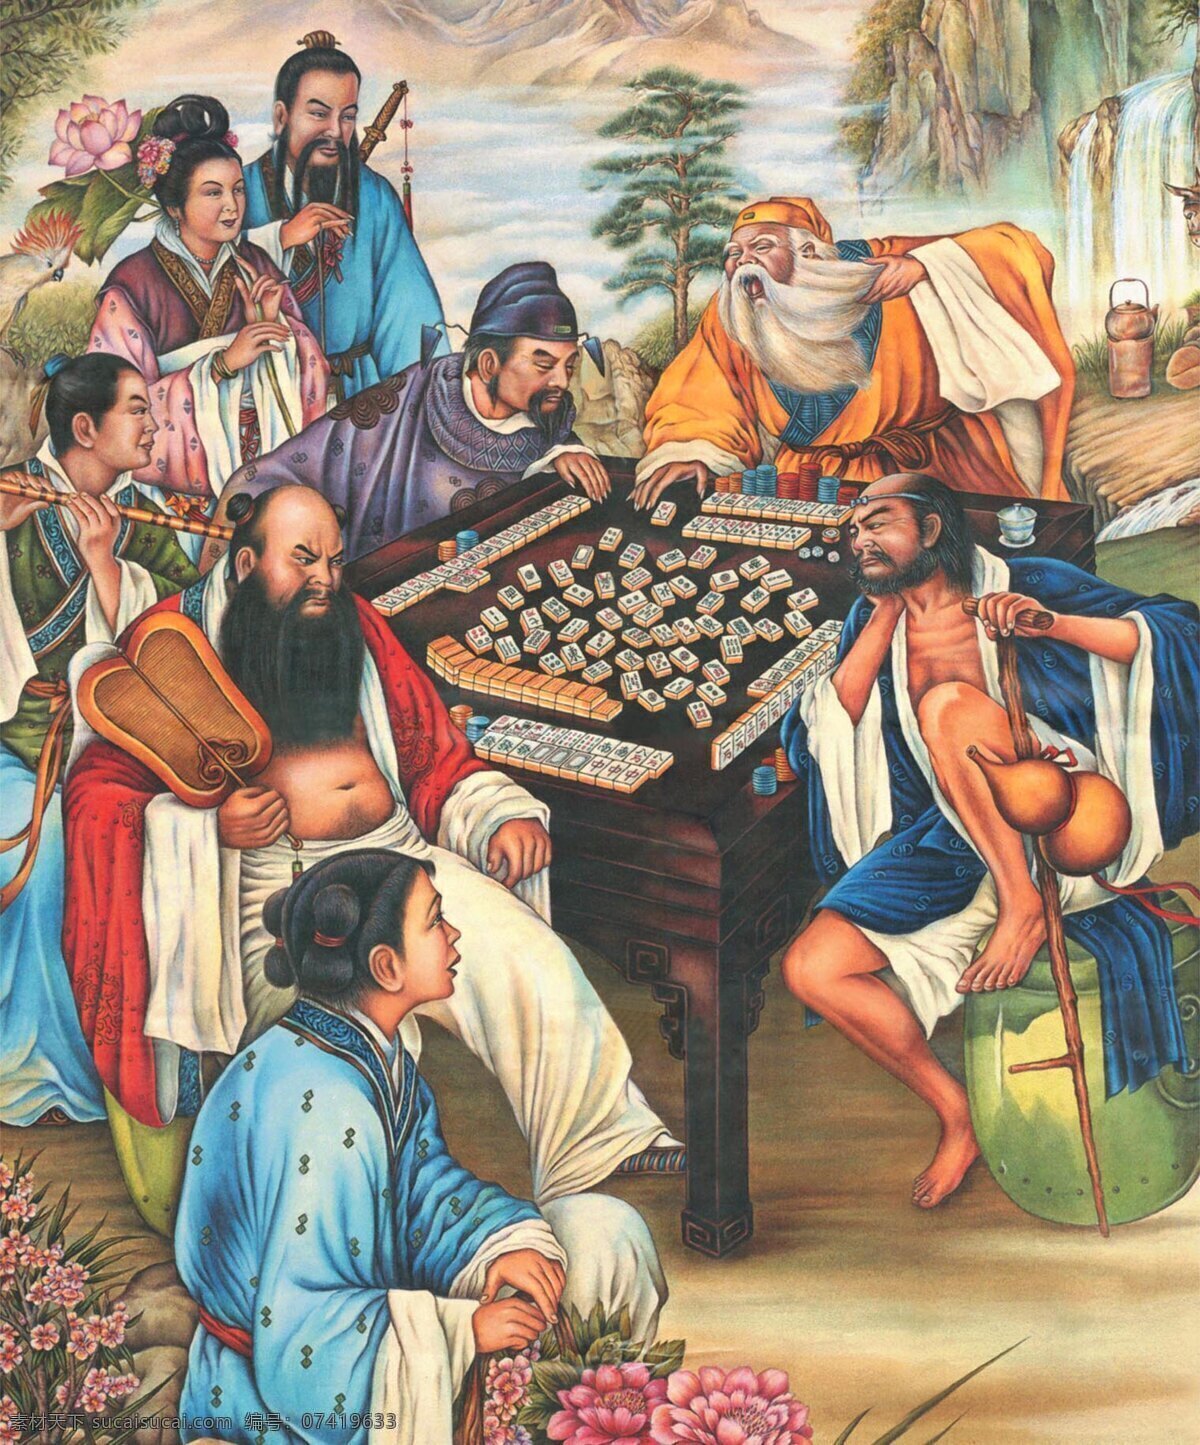 古人打麻将 麻将 打麻将 古人麻将 八仙 八仙打麻将 文化艺术 绘画书法 设计图库 300